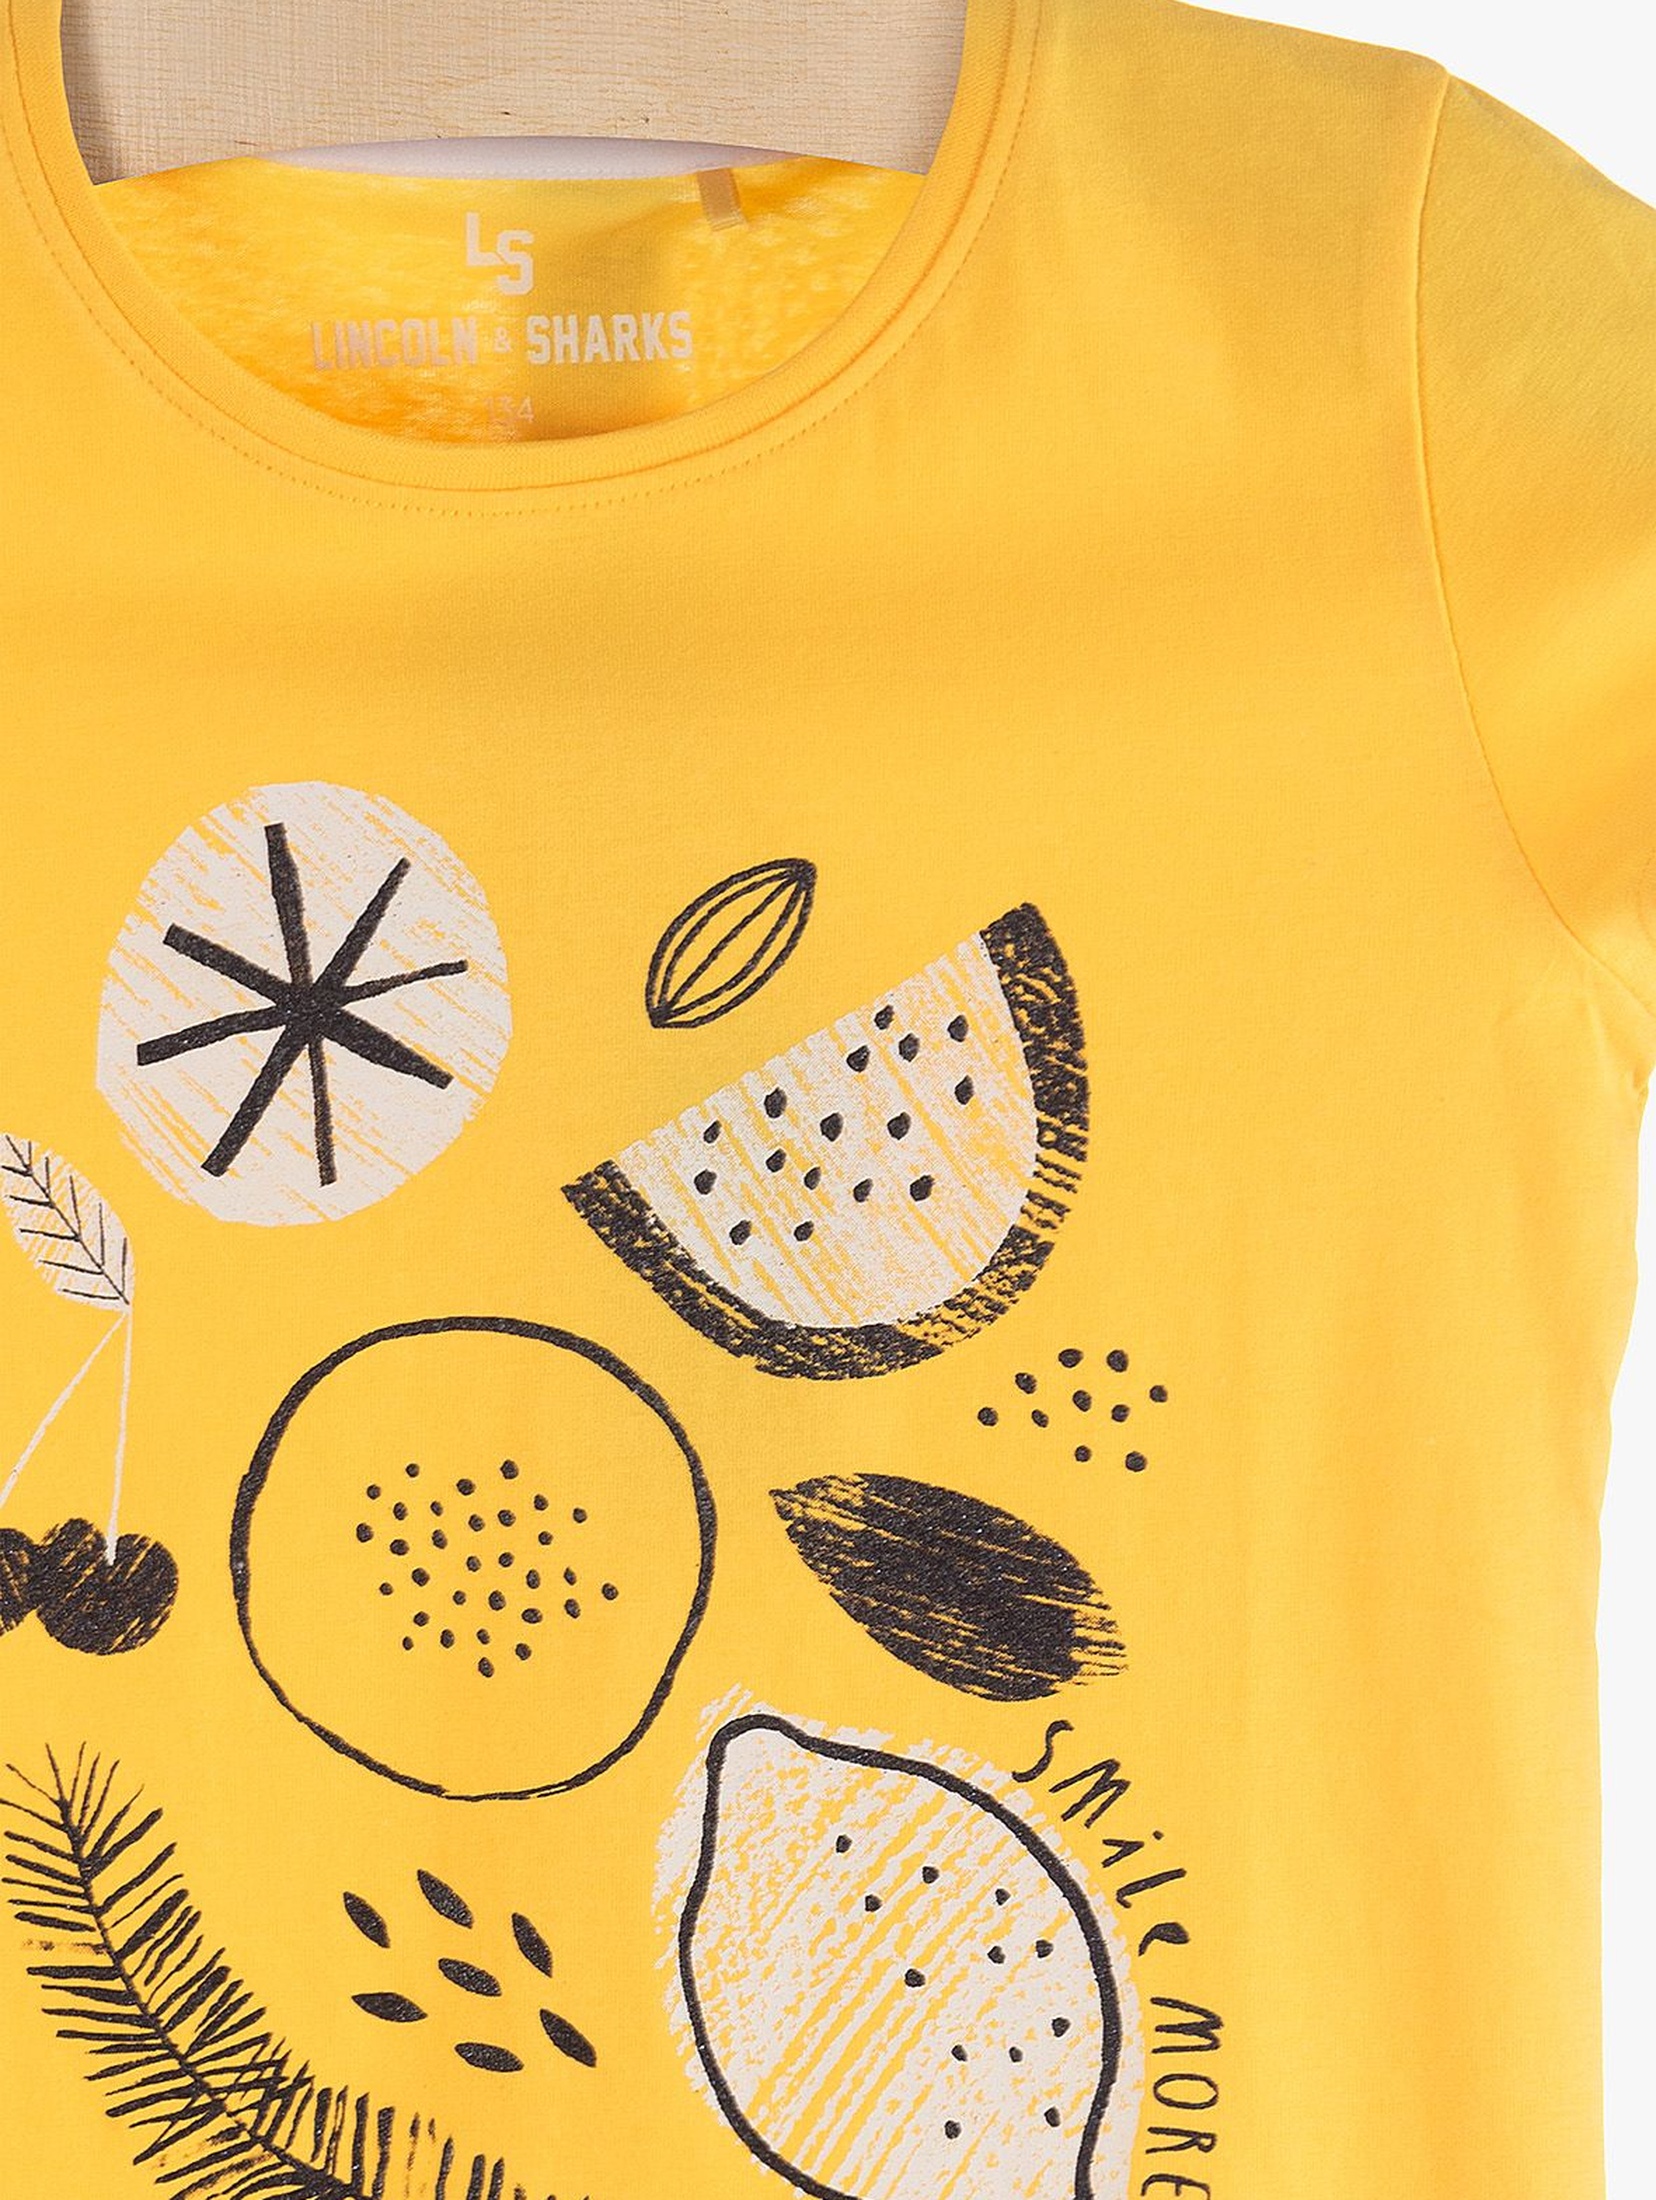 T-Shirt dziewczęcy żółty z cytrynami - 100% bawełna